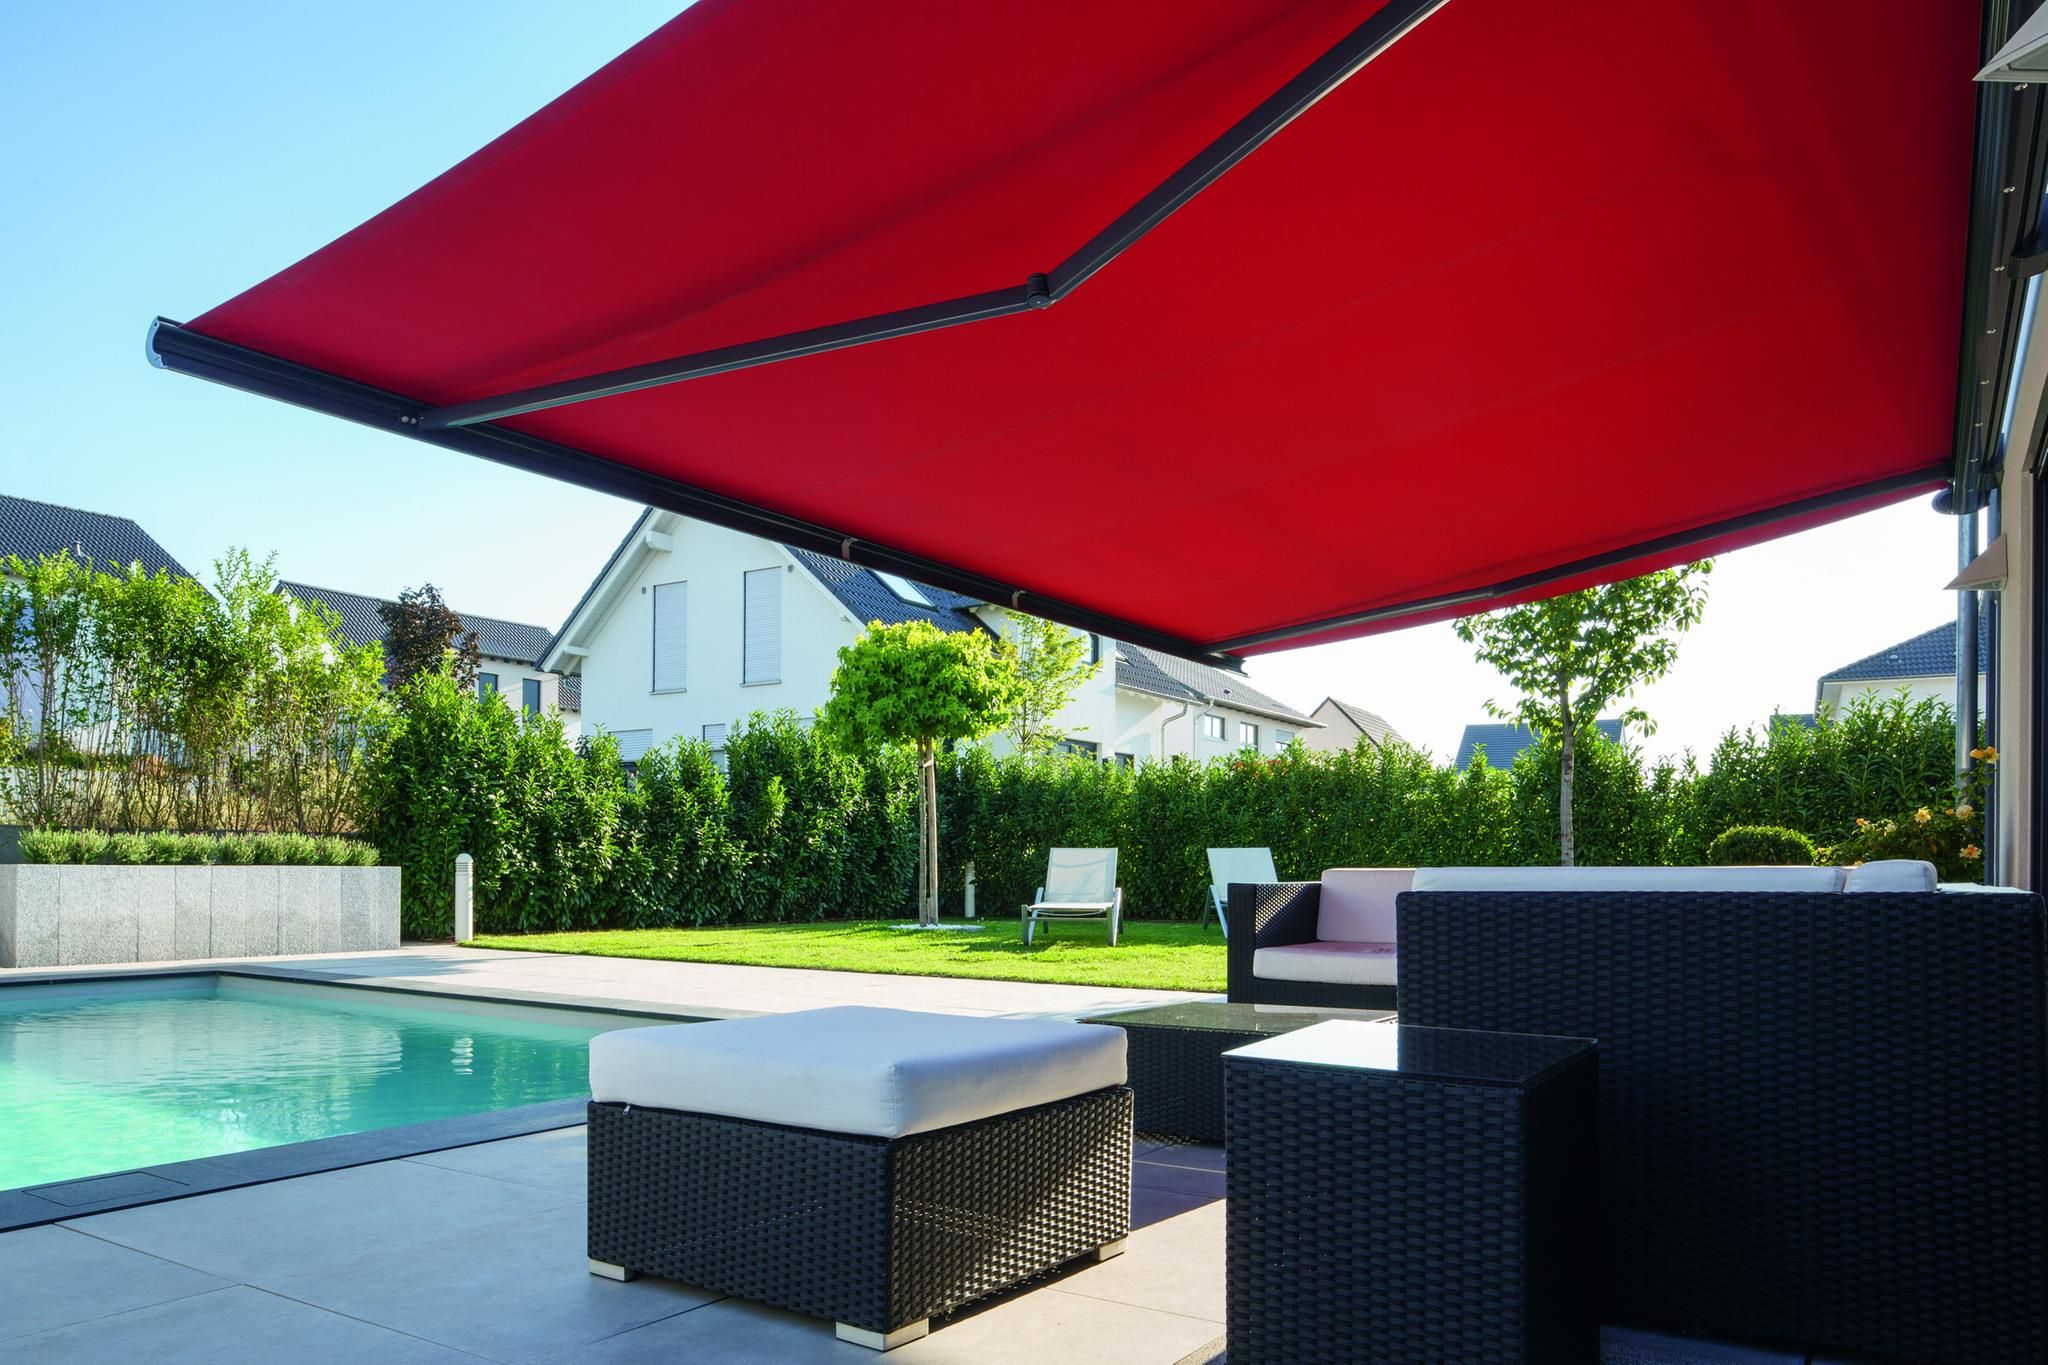 Sonnenschutz für Ihre Terrasse - viele hochwertige Markenprodukte